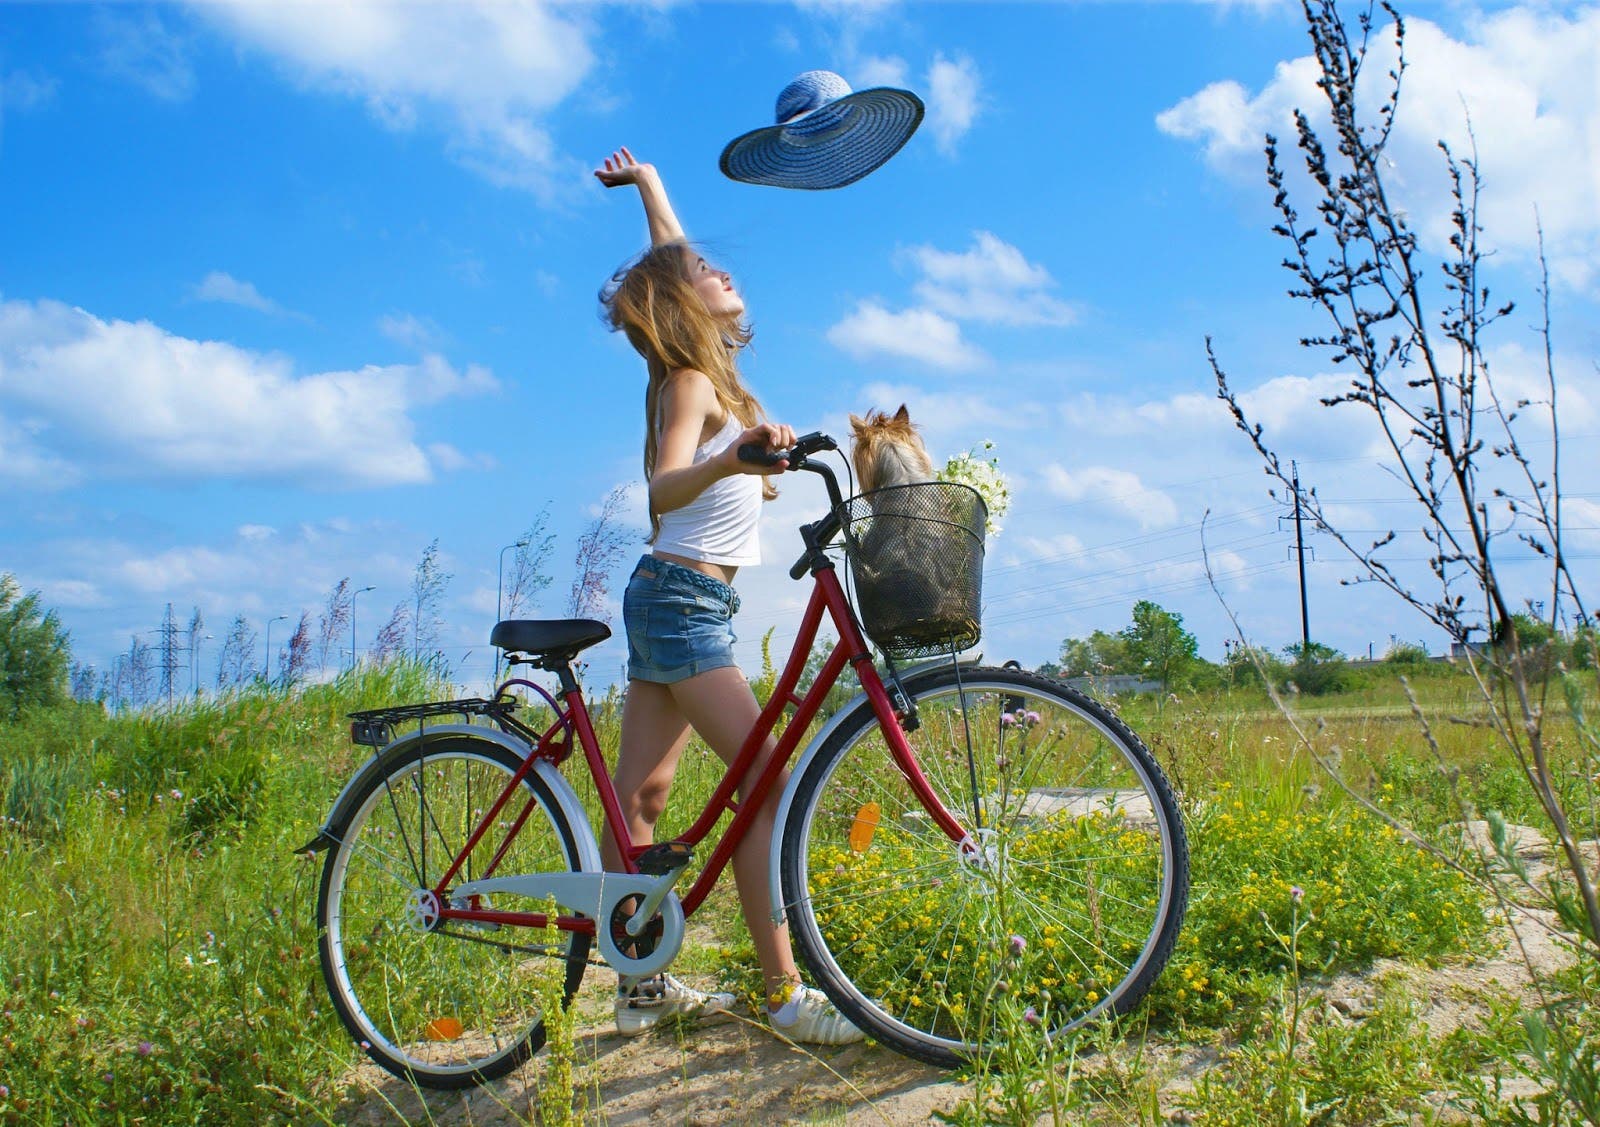 linda-chica-disfruta-un-dia-soleado-a-orillas-de-la-ciudad-con-mascota-en-la-bicicleta